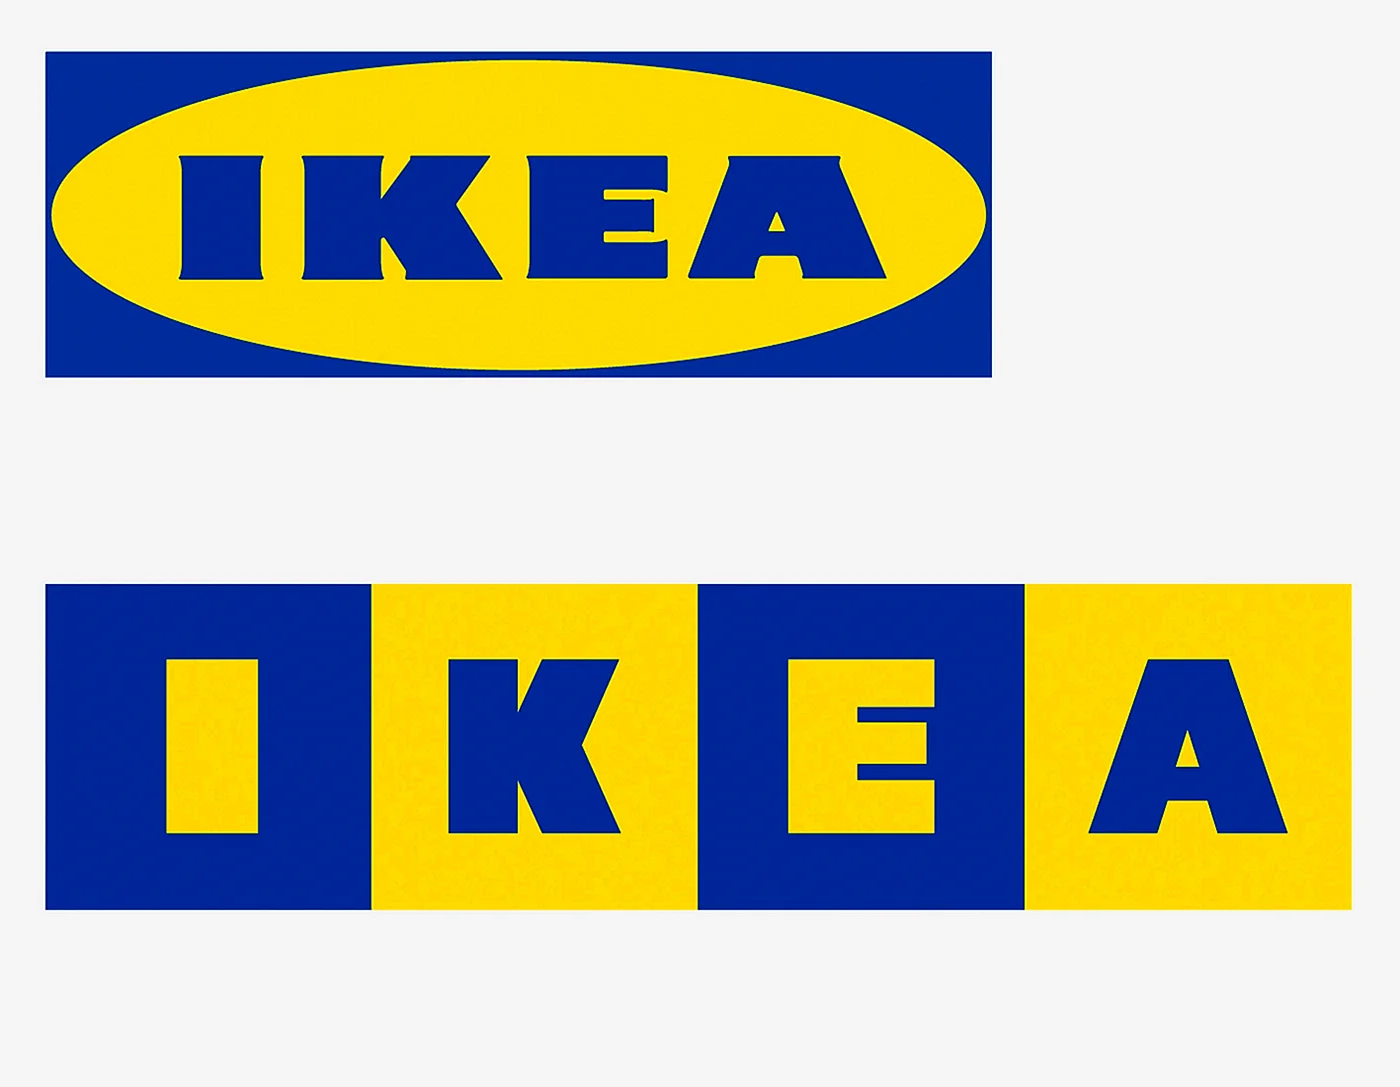 Икеа логотип